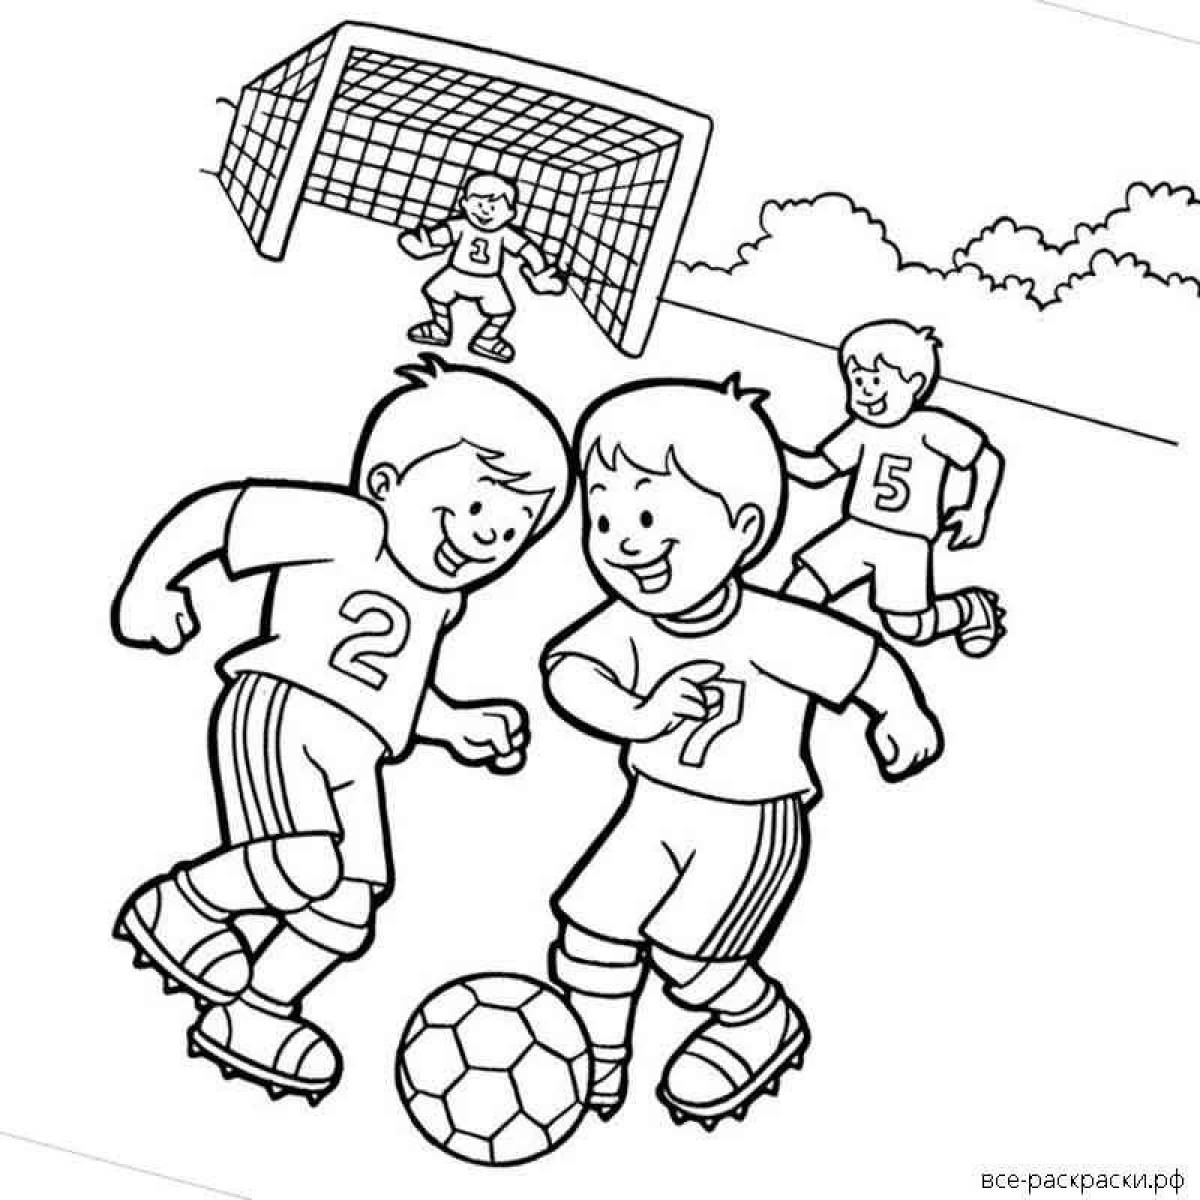 Юмористическая футбольная раскраска для детей